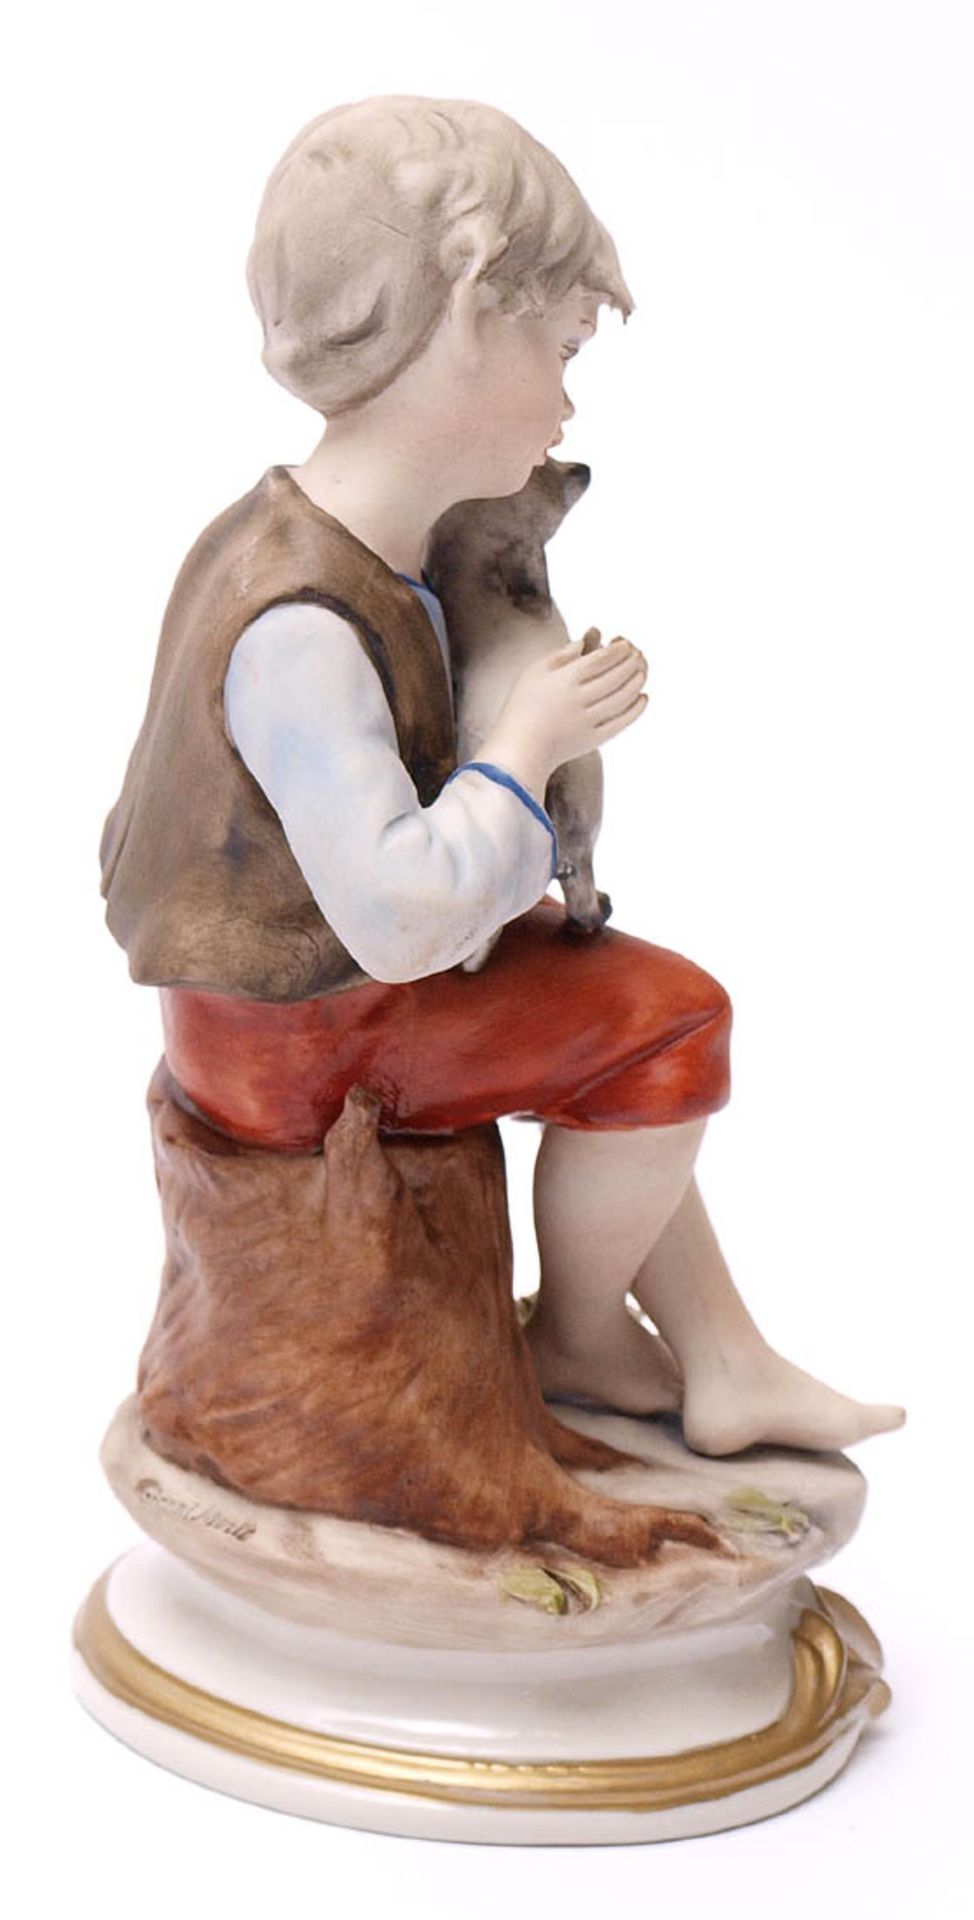 Figurine Auf einem Baumstumpf sitzender Knabe, auf dem Schoss einen kleinen Hund haltend. - Bild 2 aus 4